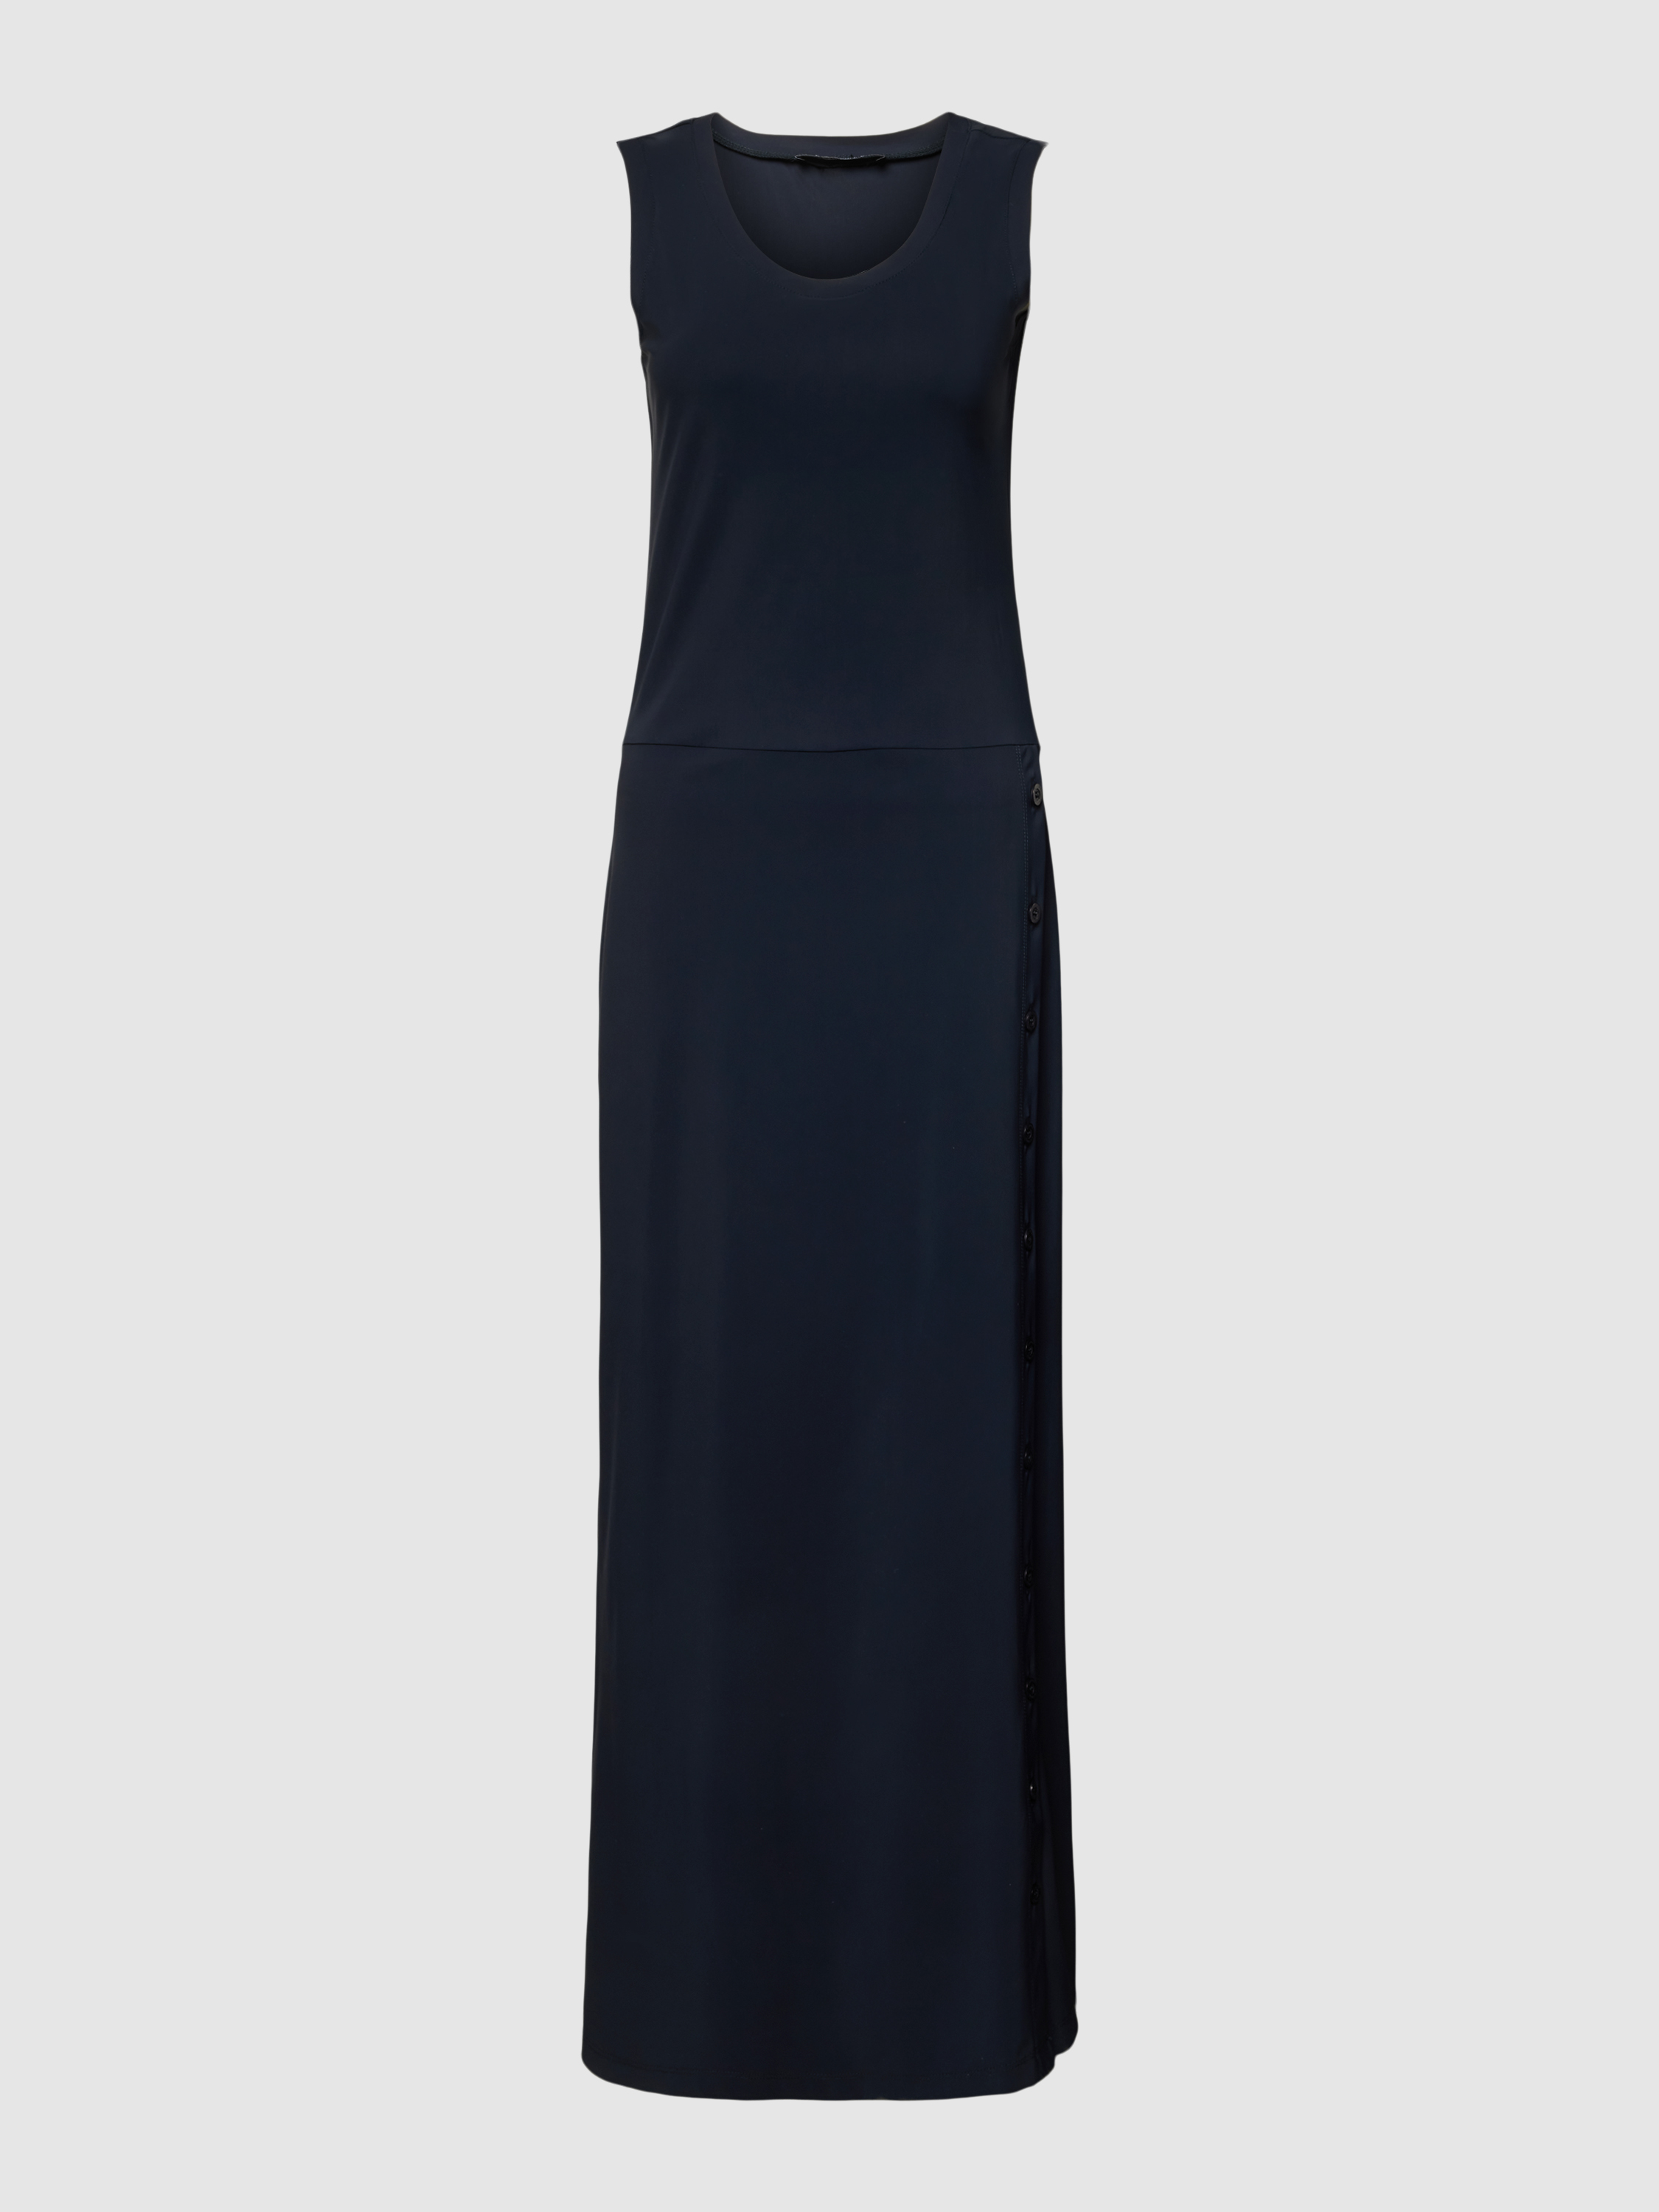 Платье женское D?Etoiles Casiope 1831750 синее XS (доставка из-за рубежа)